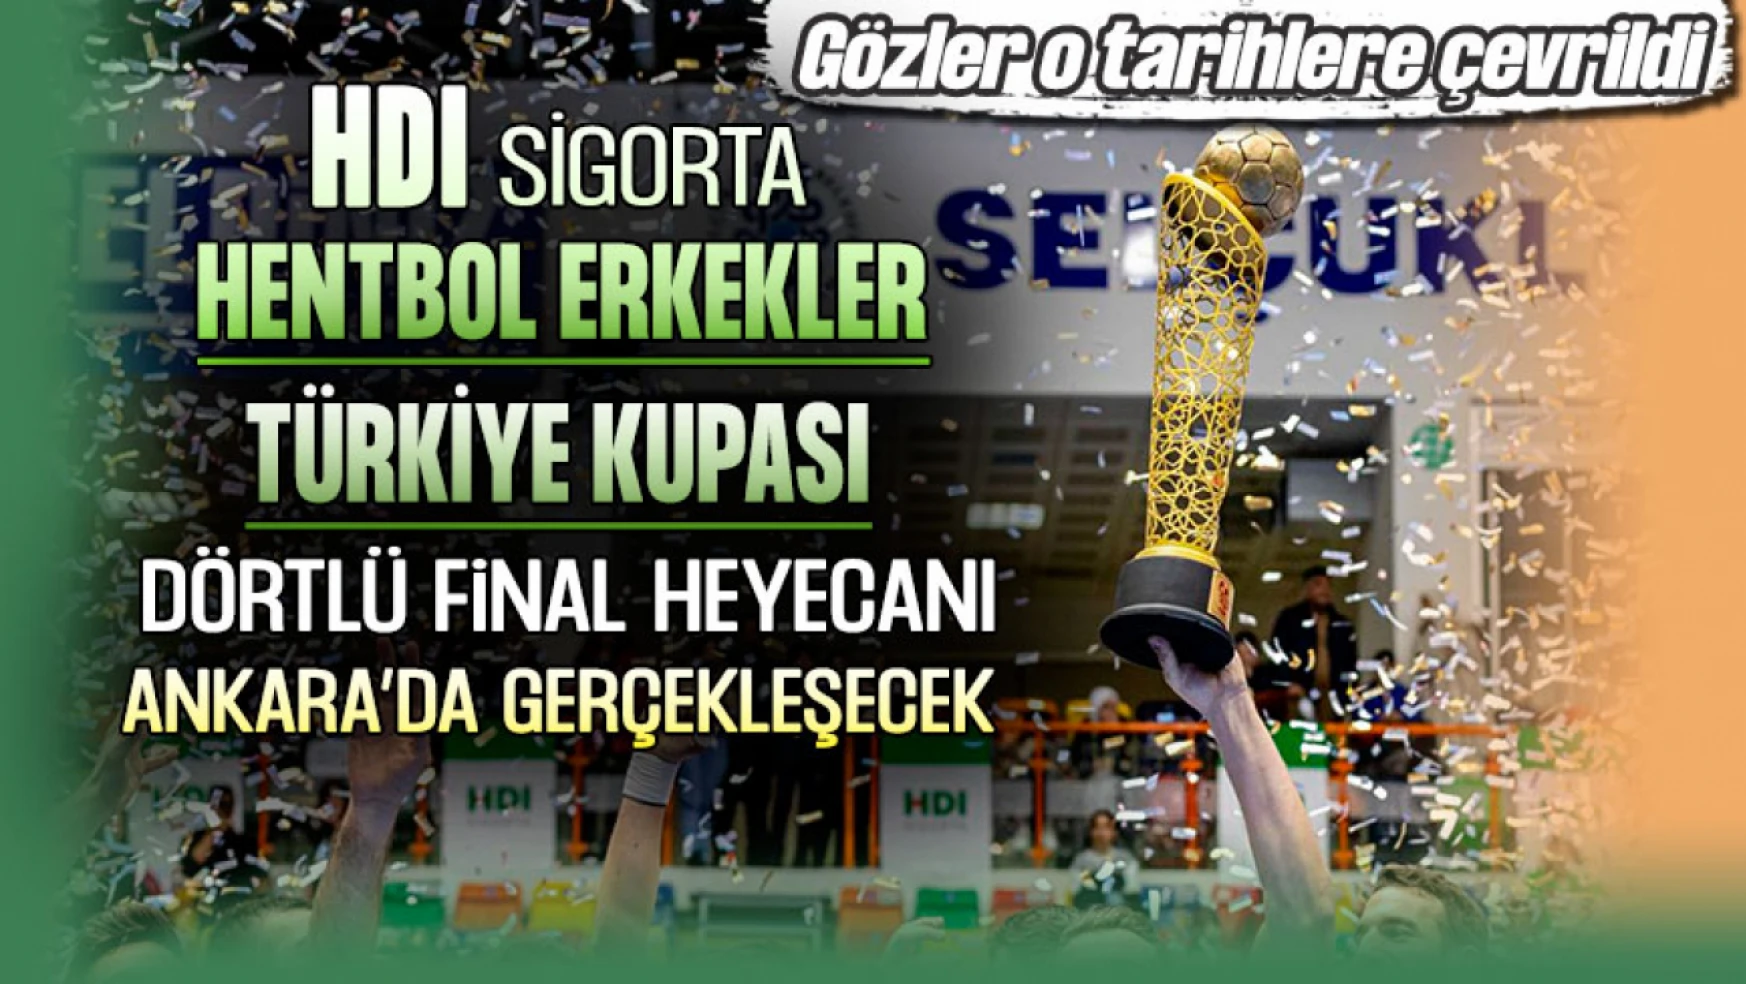 HDI Sigorta Erkekler Türkiye Kupası Dörtlü Final Heyecanı Ankara'da Yaşanacak!